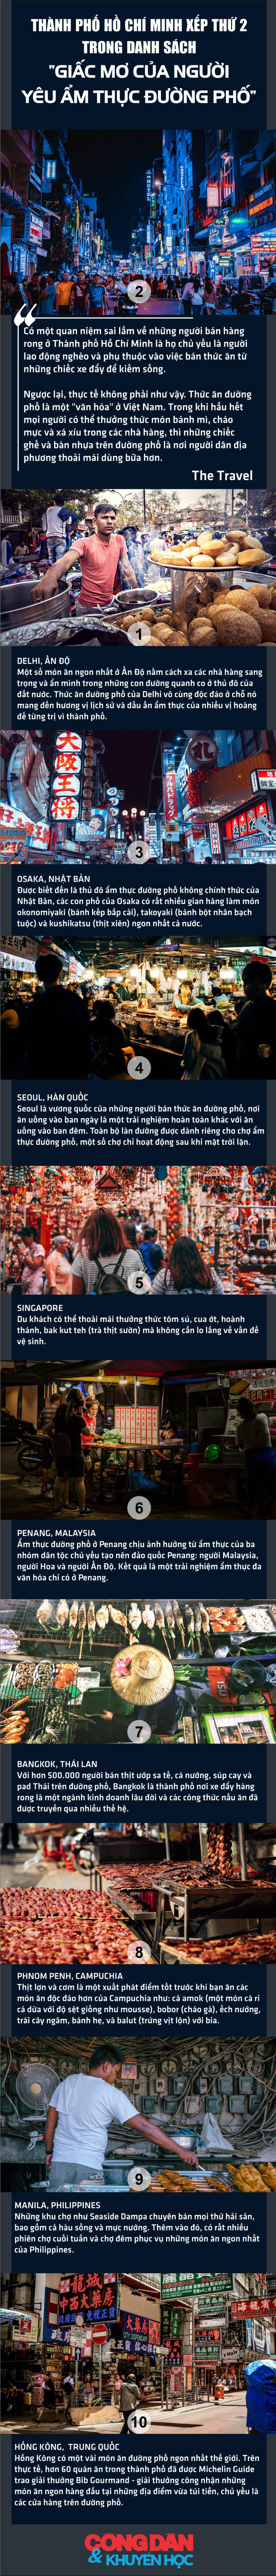 Tạp chí du lịch Canada: Thành phố Hồ Chí Minh đứng thứ 2 về ẩm thực đường phố châu Á - Ảnh 1.